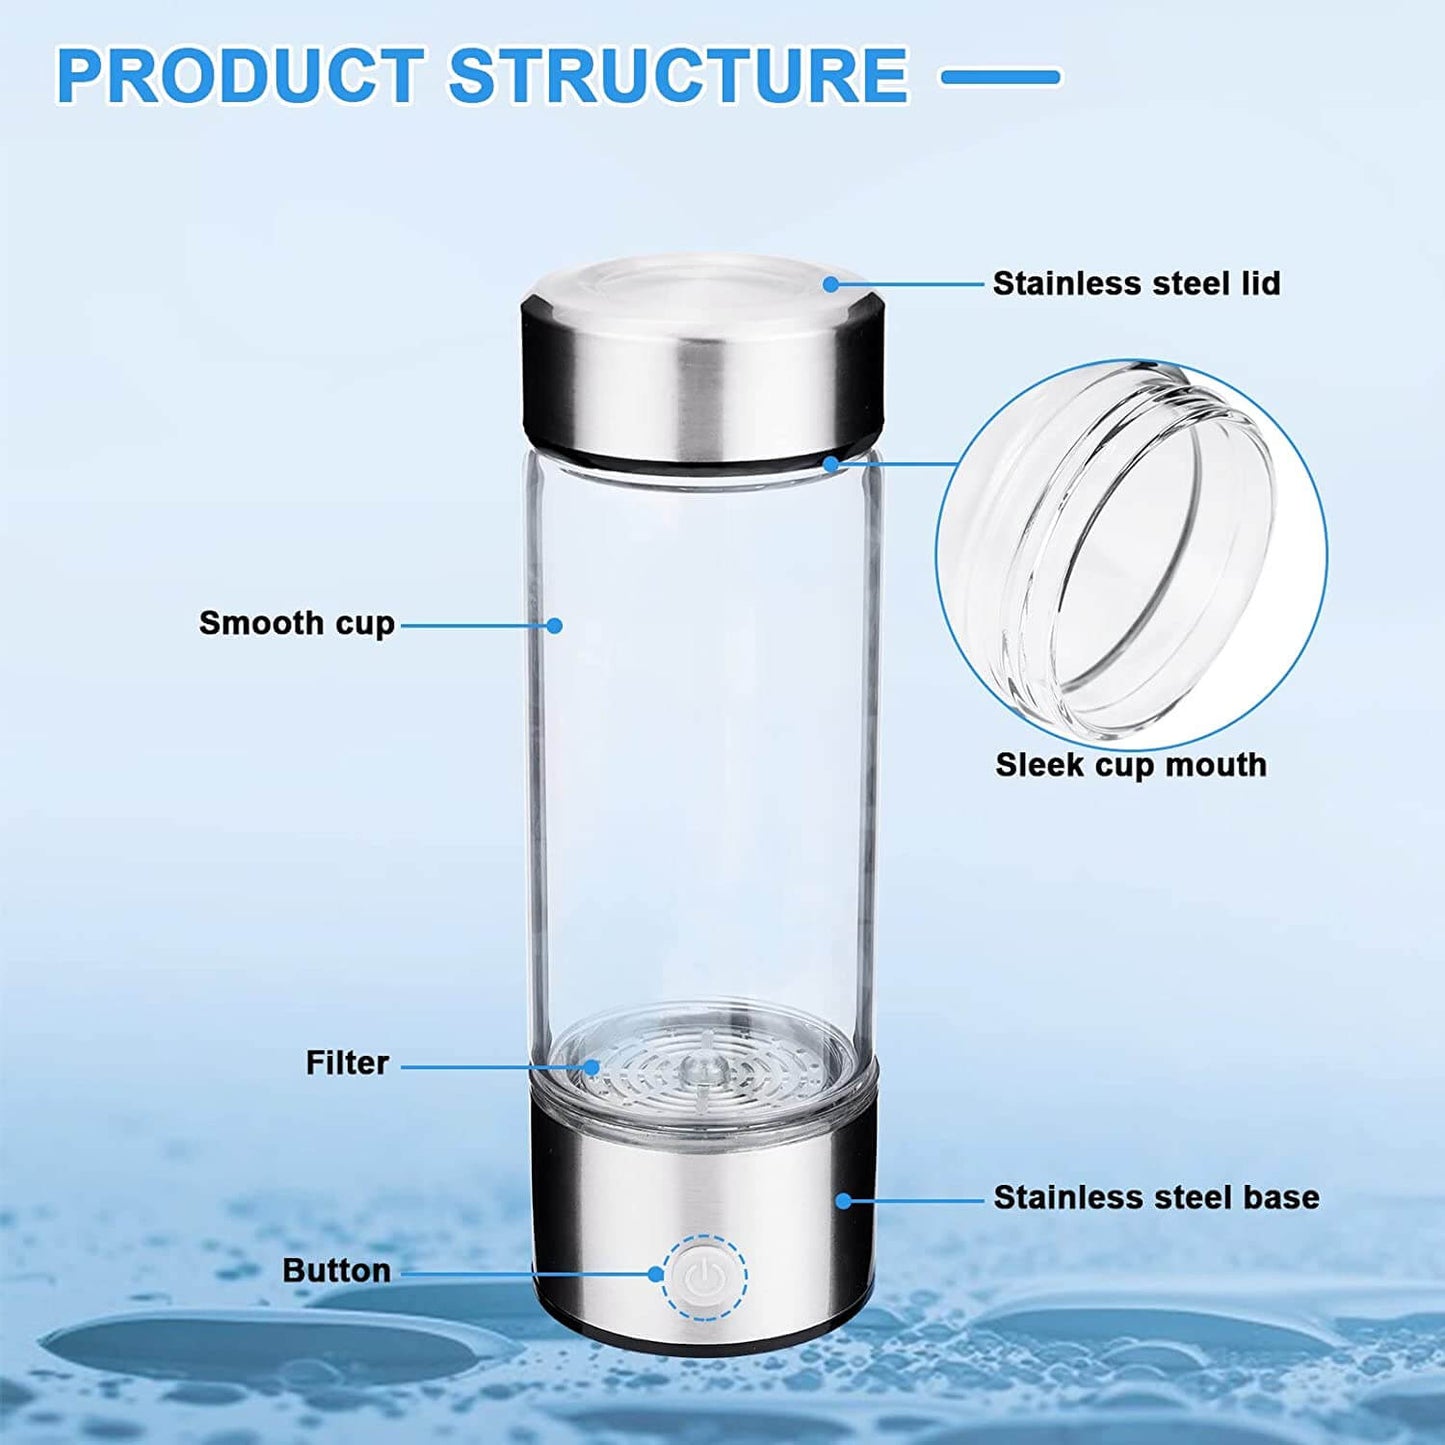 HydraSip™ - Hydrogen Water Bottle